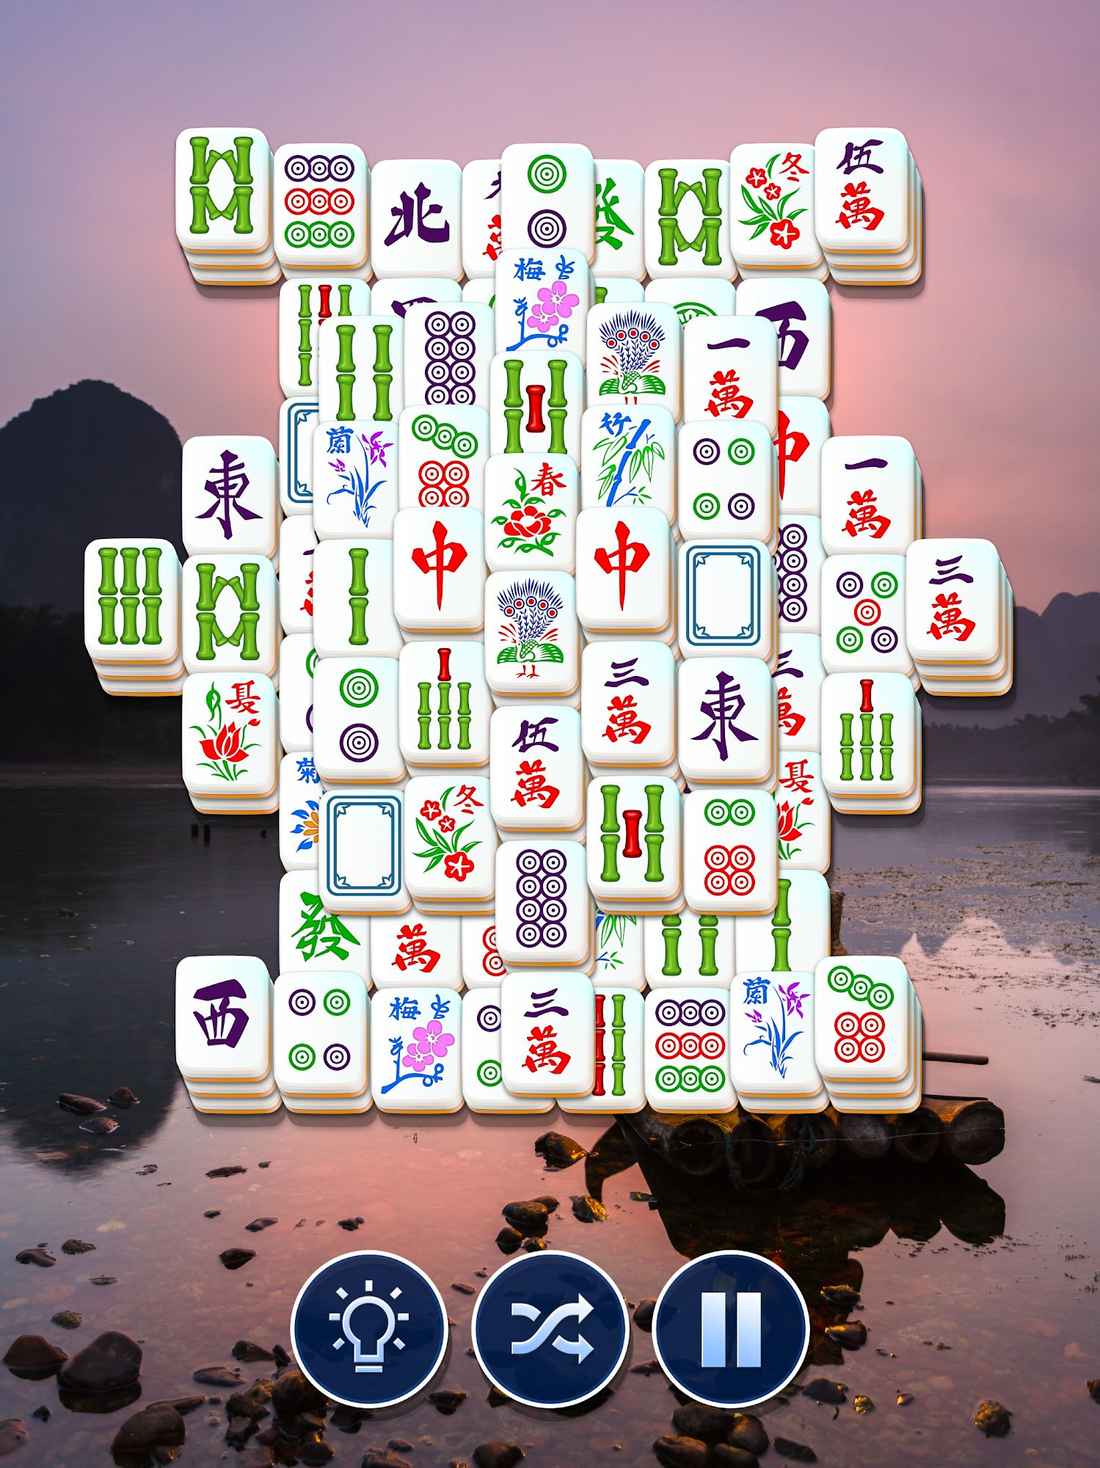 Клуб головоломок. Маджонг клуб. Mahjong Solitaire обложка. Маджонг (пасьянс) обложка. Mahjong Club 10000 уровень.